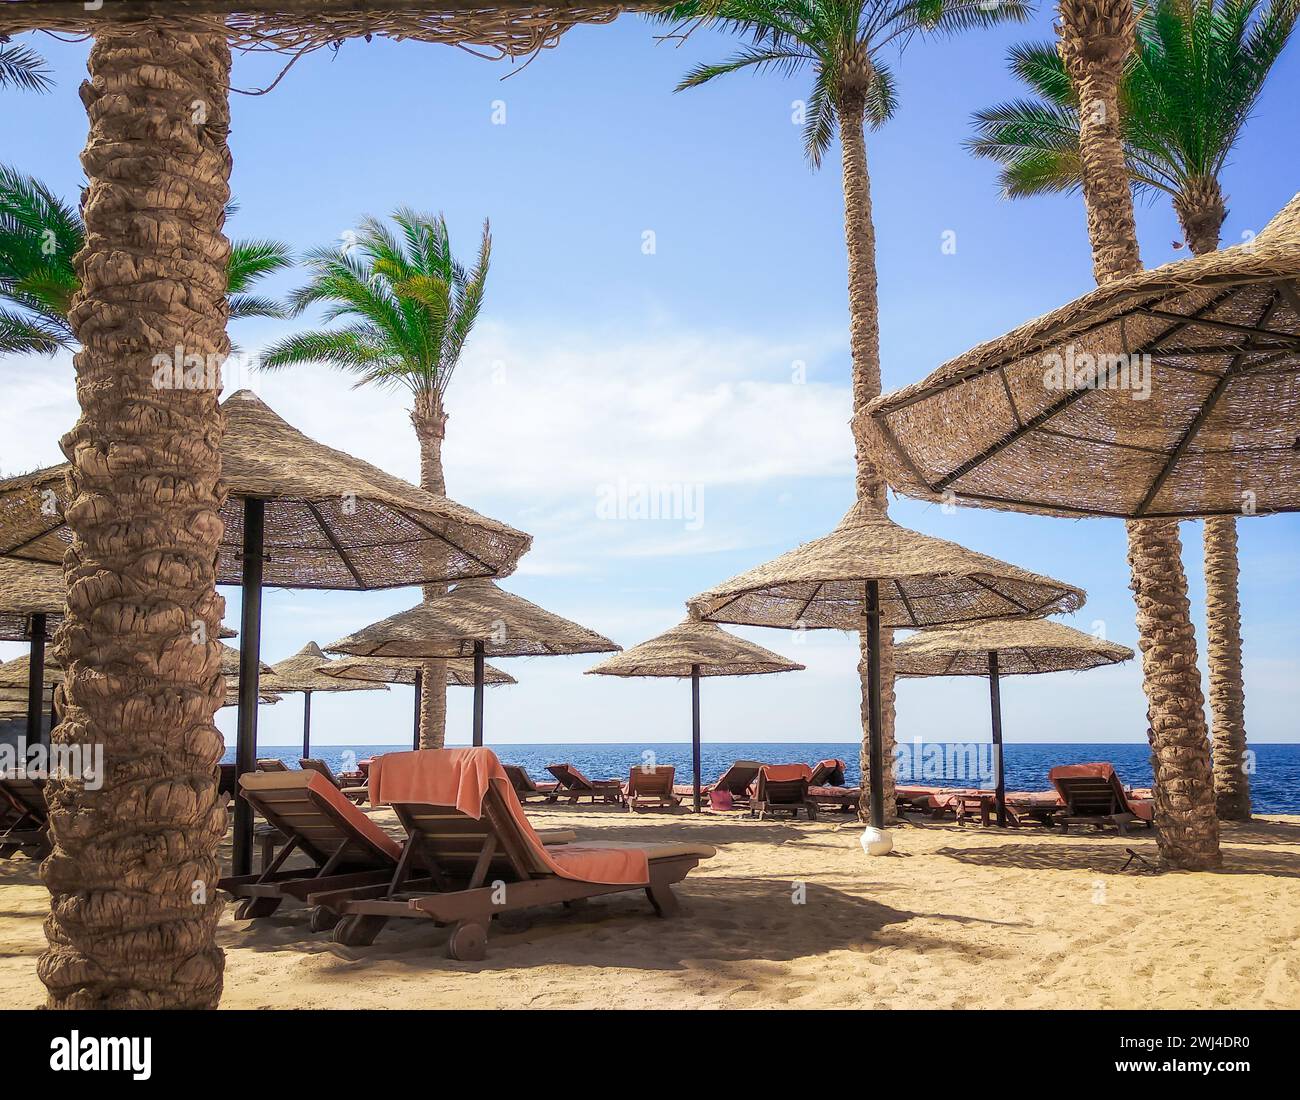 Spiaggia turistica senza persone con palme e ombrelloni in legno in Egitto Foto Stock